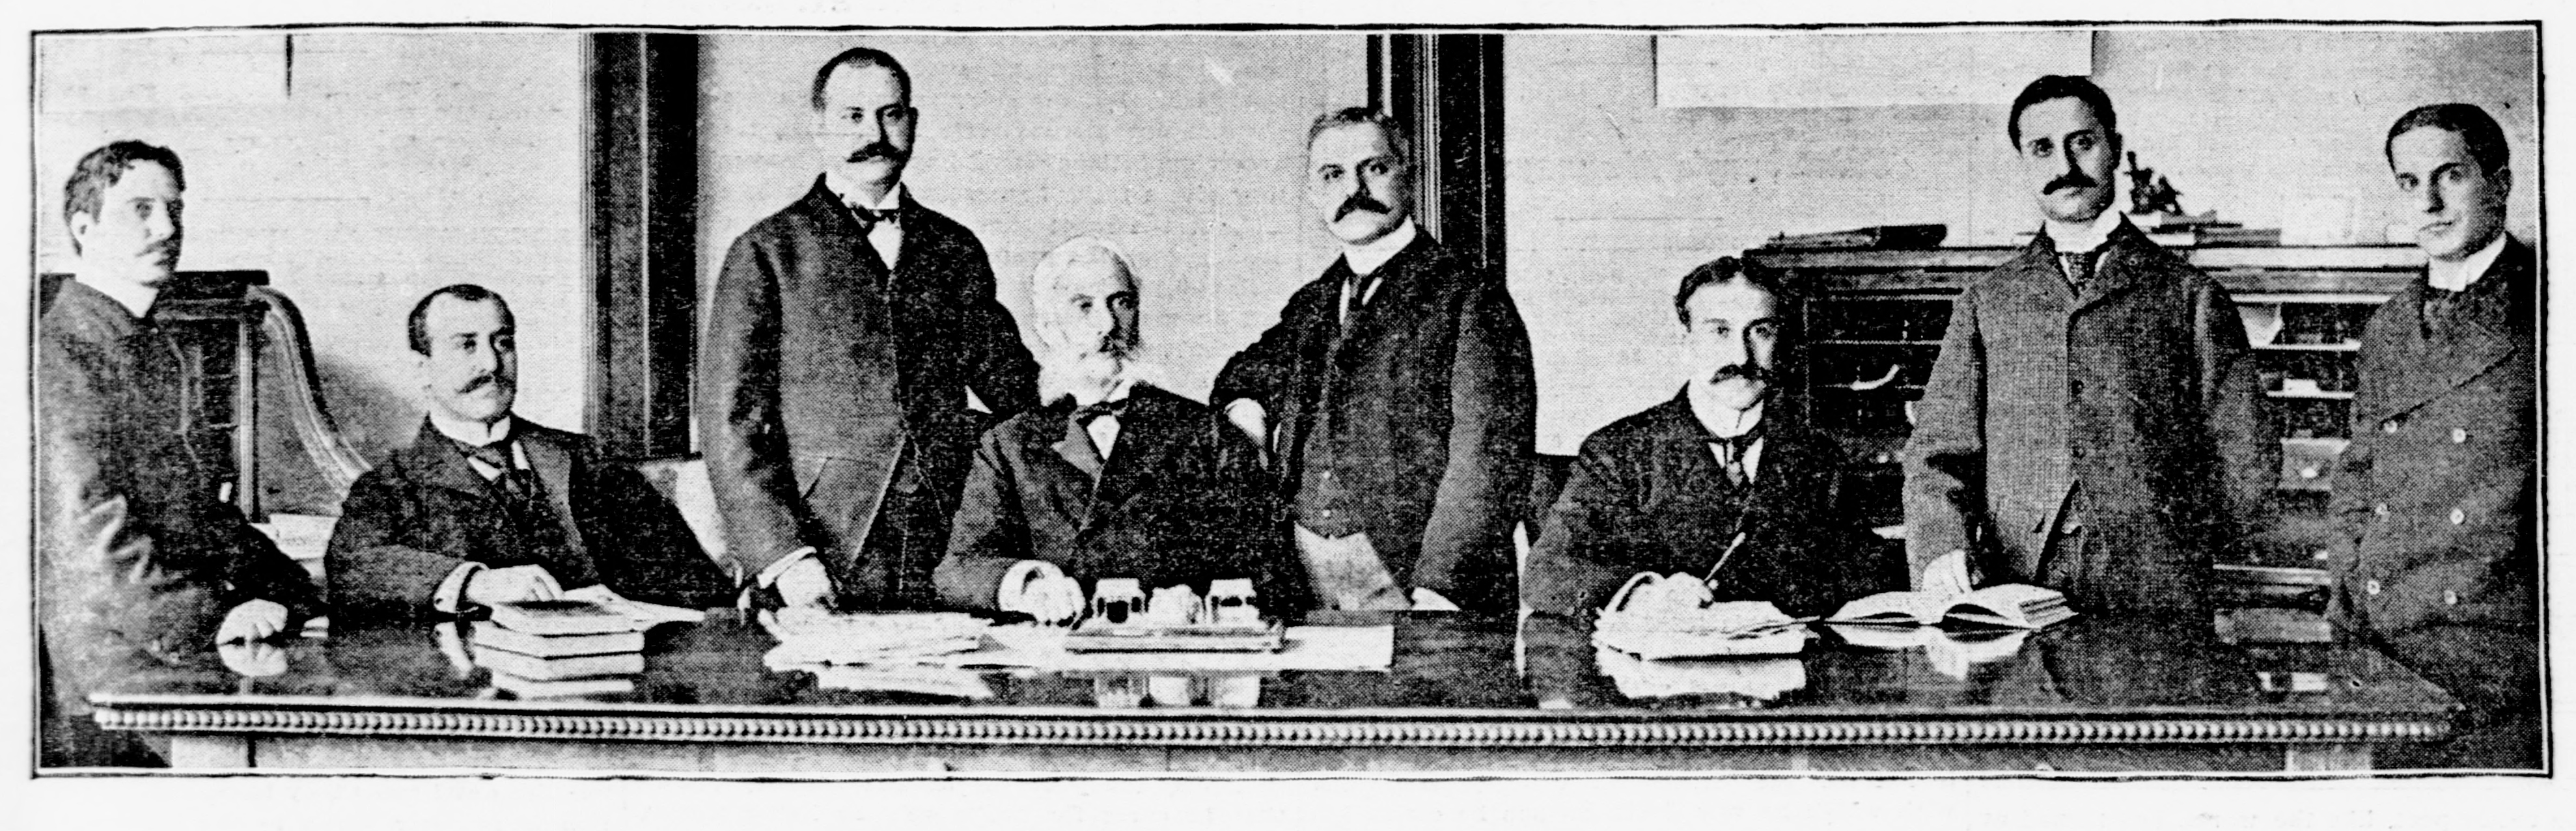 Основатель династии Мейер Гуггенхайм (Meyer Guggenheim, 4-й слева) и семь его сыновей.